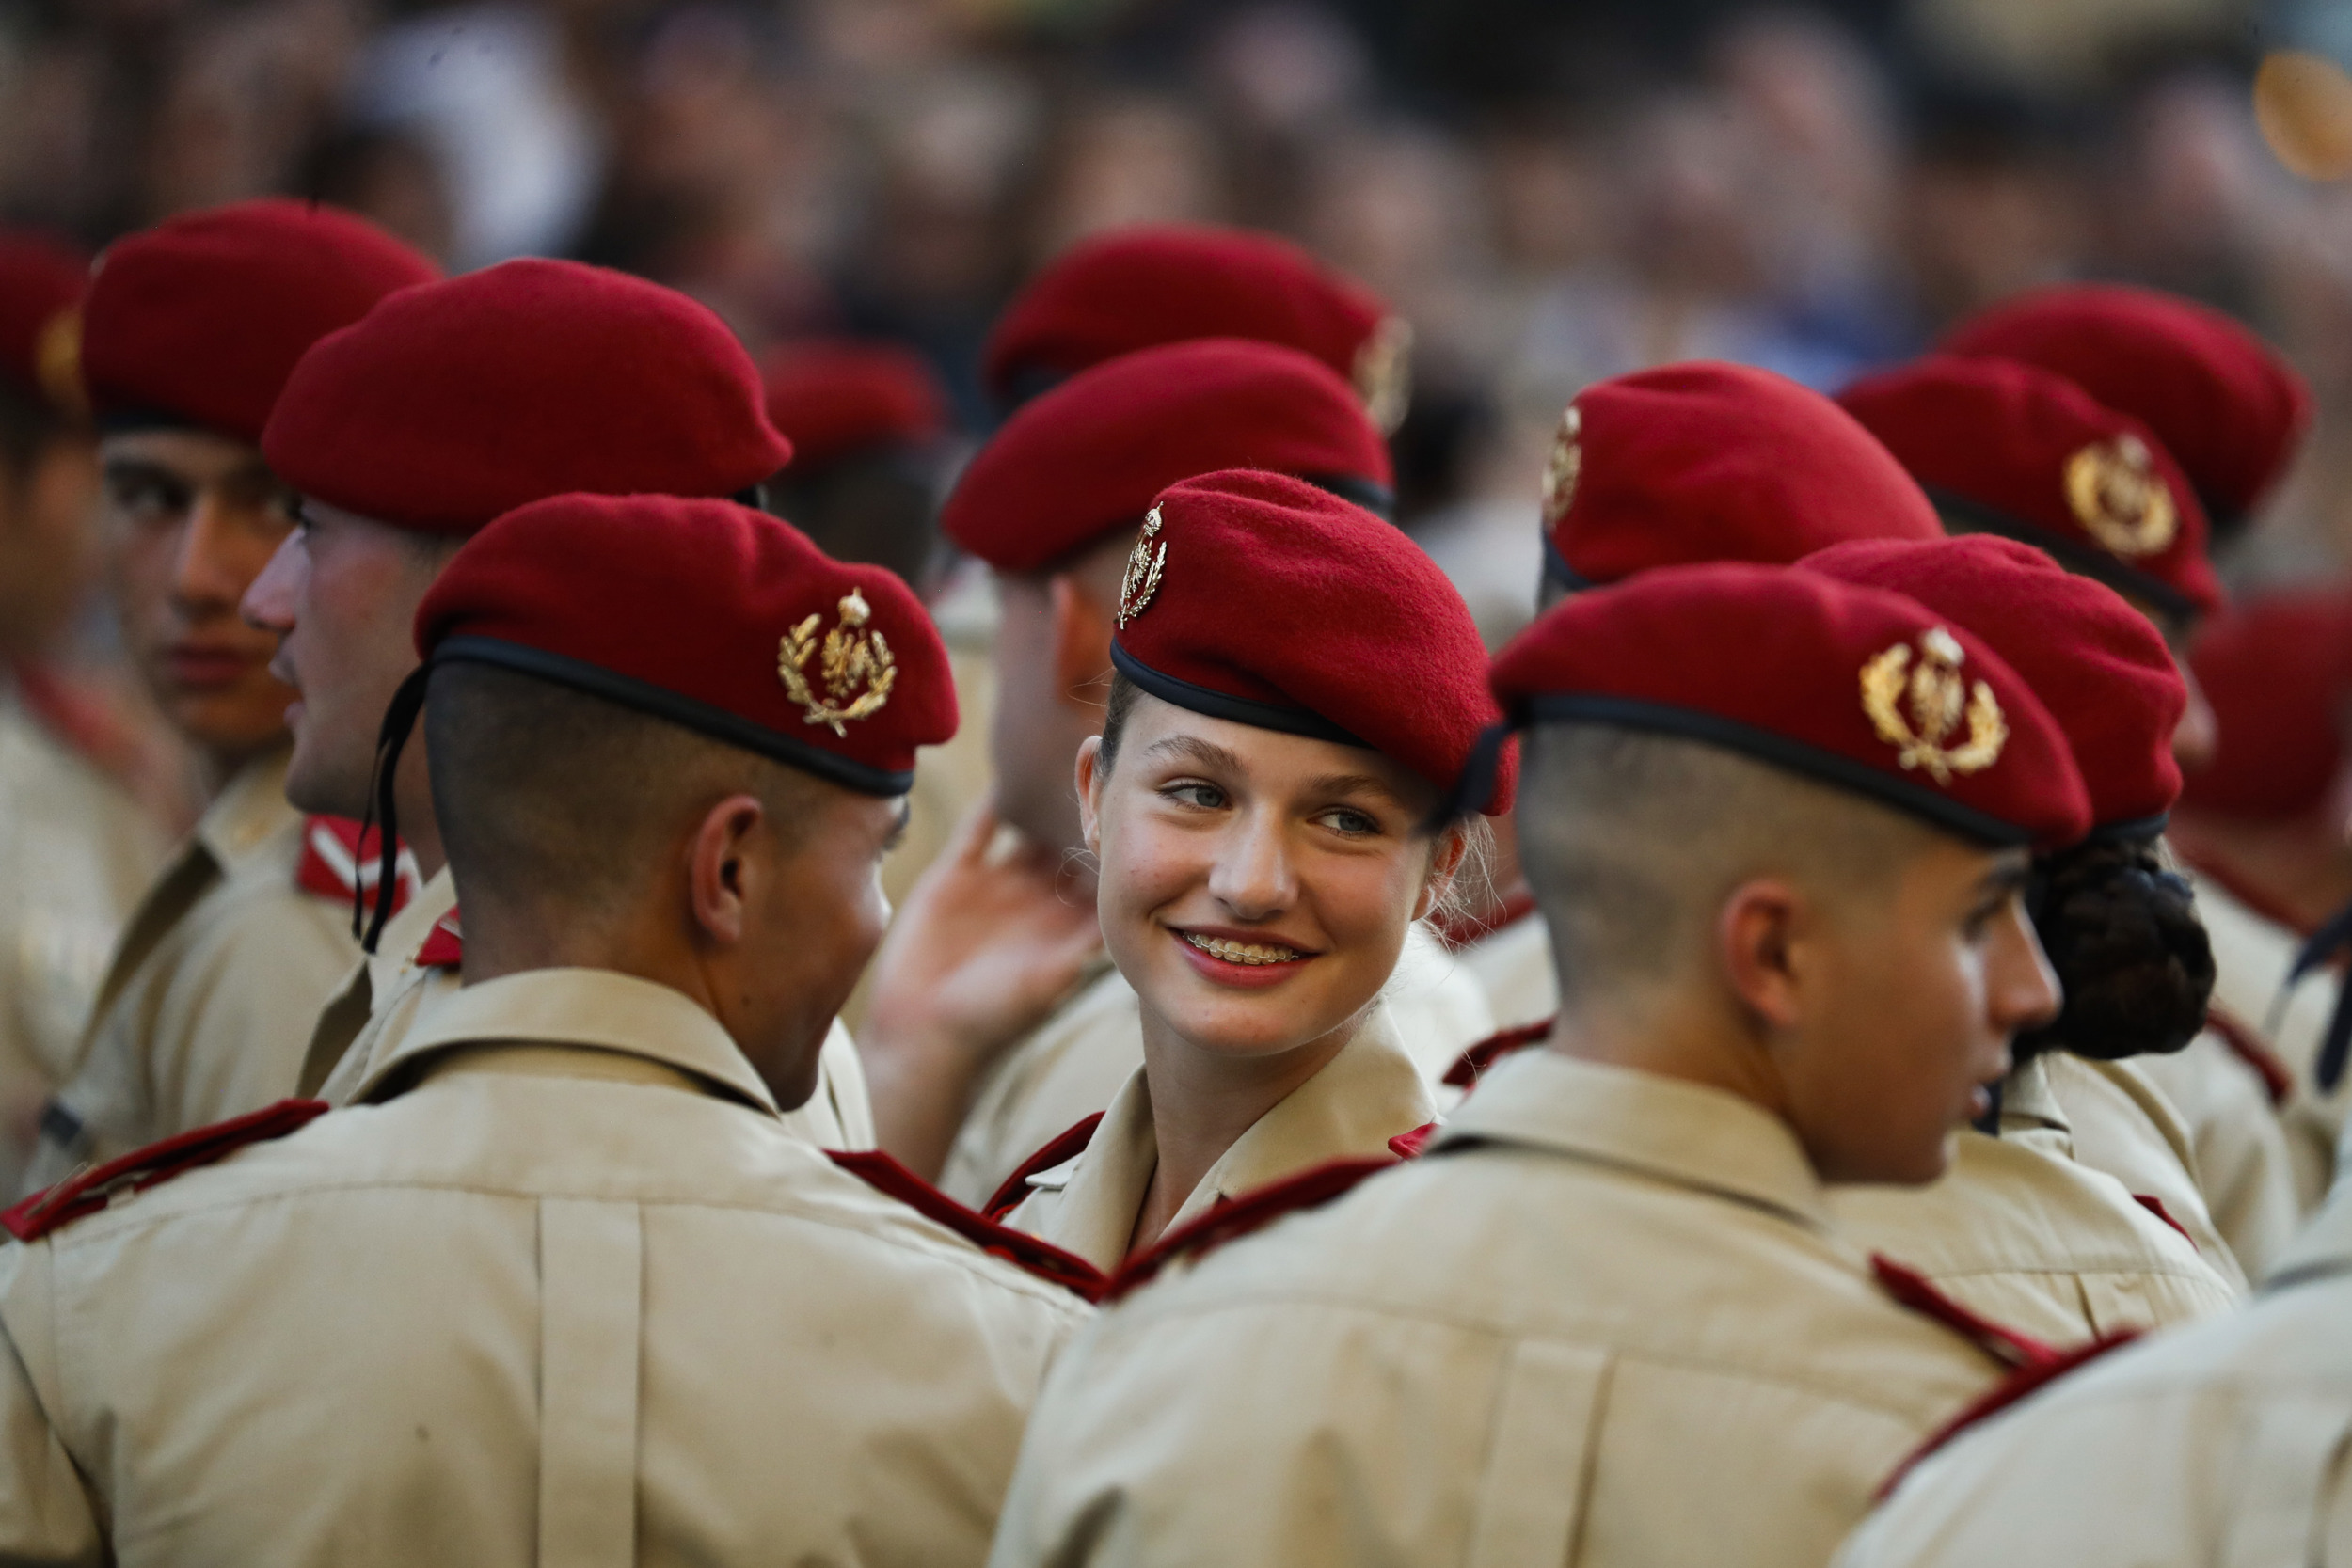 La dama cadete Leonor participa en el 142 aniversario de la Academia General Militar de Zaragoza